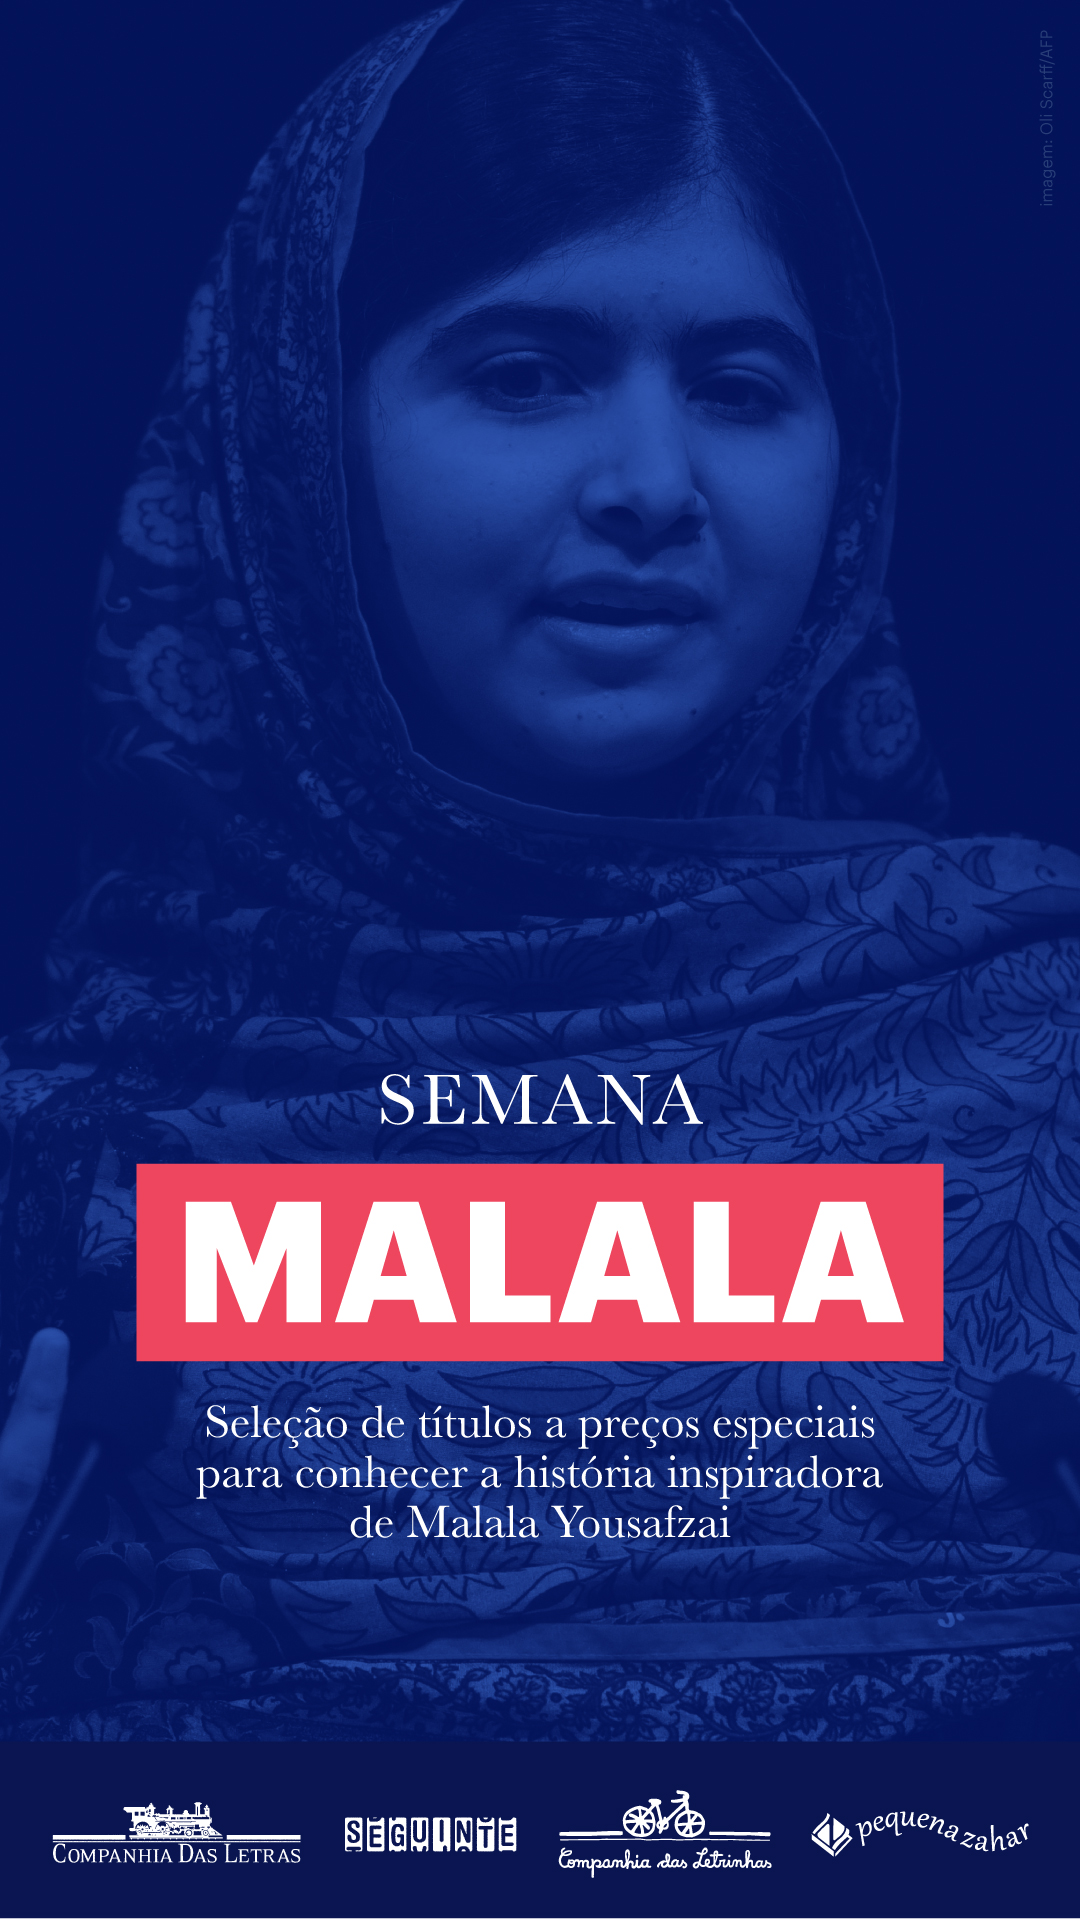 Semana Malala - Seleção de títulos a preços especiais para conhecer a história inspiradora de Malala Yousafzai